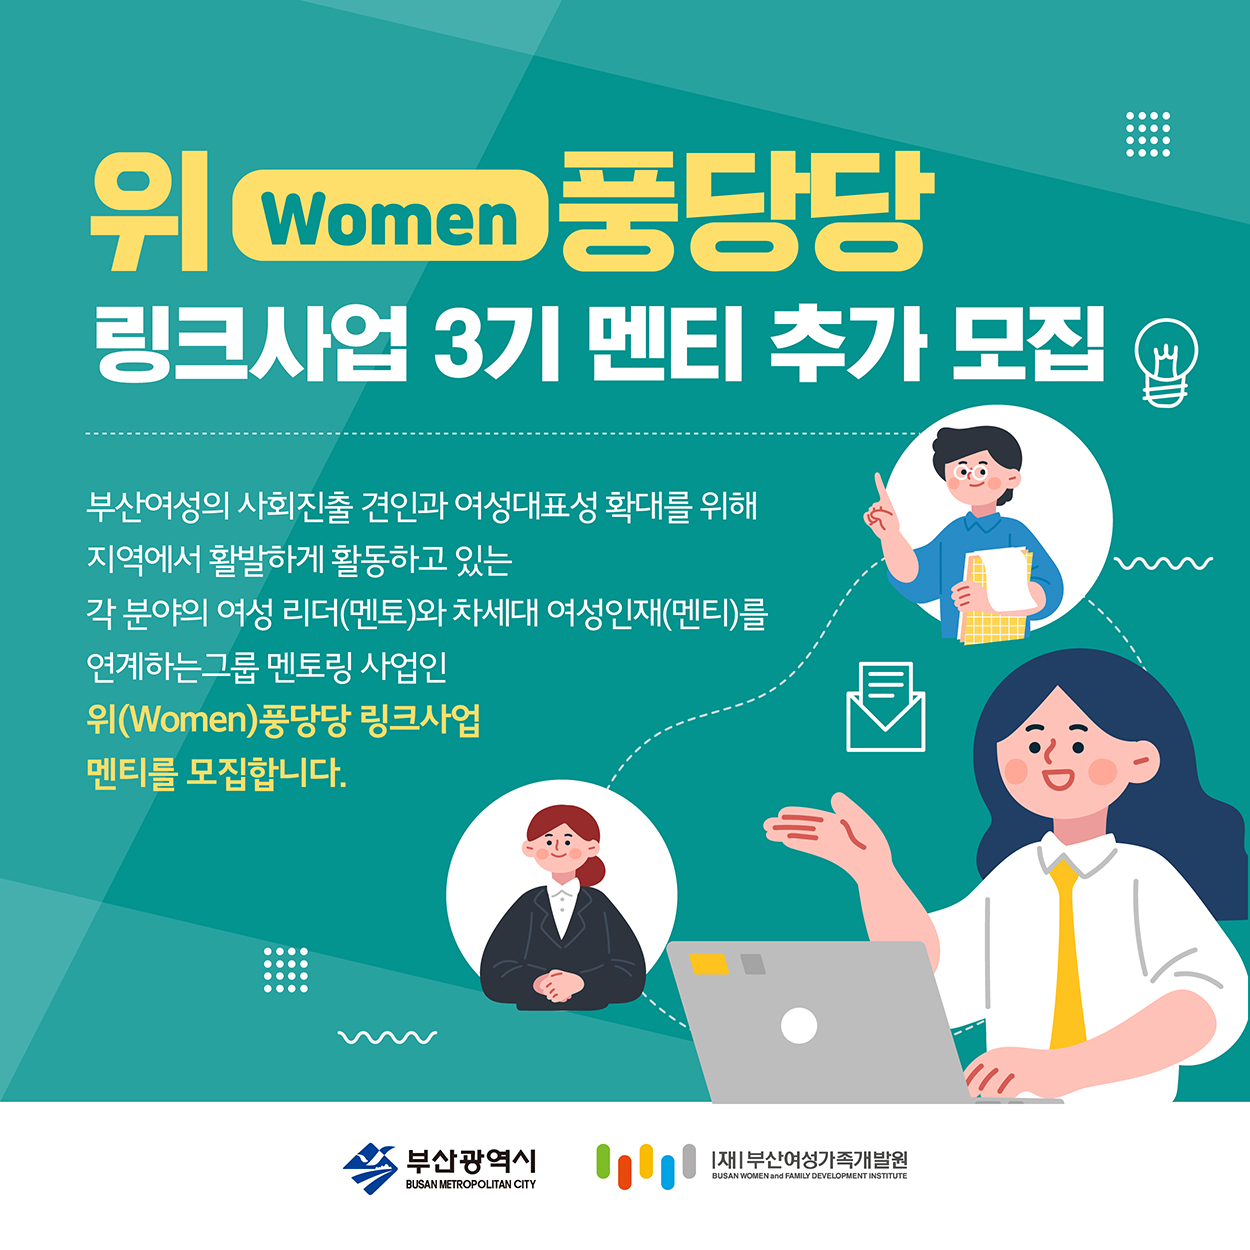 위(Women)풍당당 링크사업 3기 멘티 추가 모집(22.05.11)